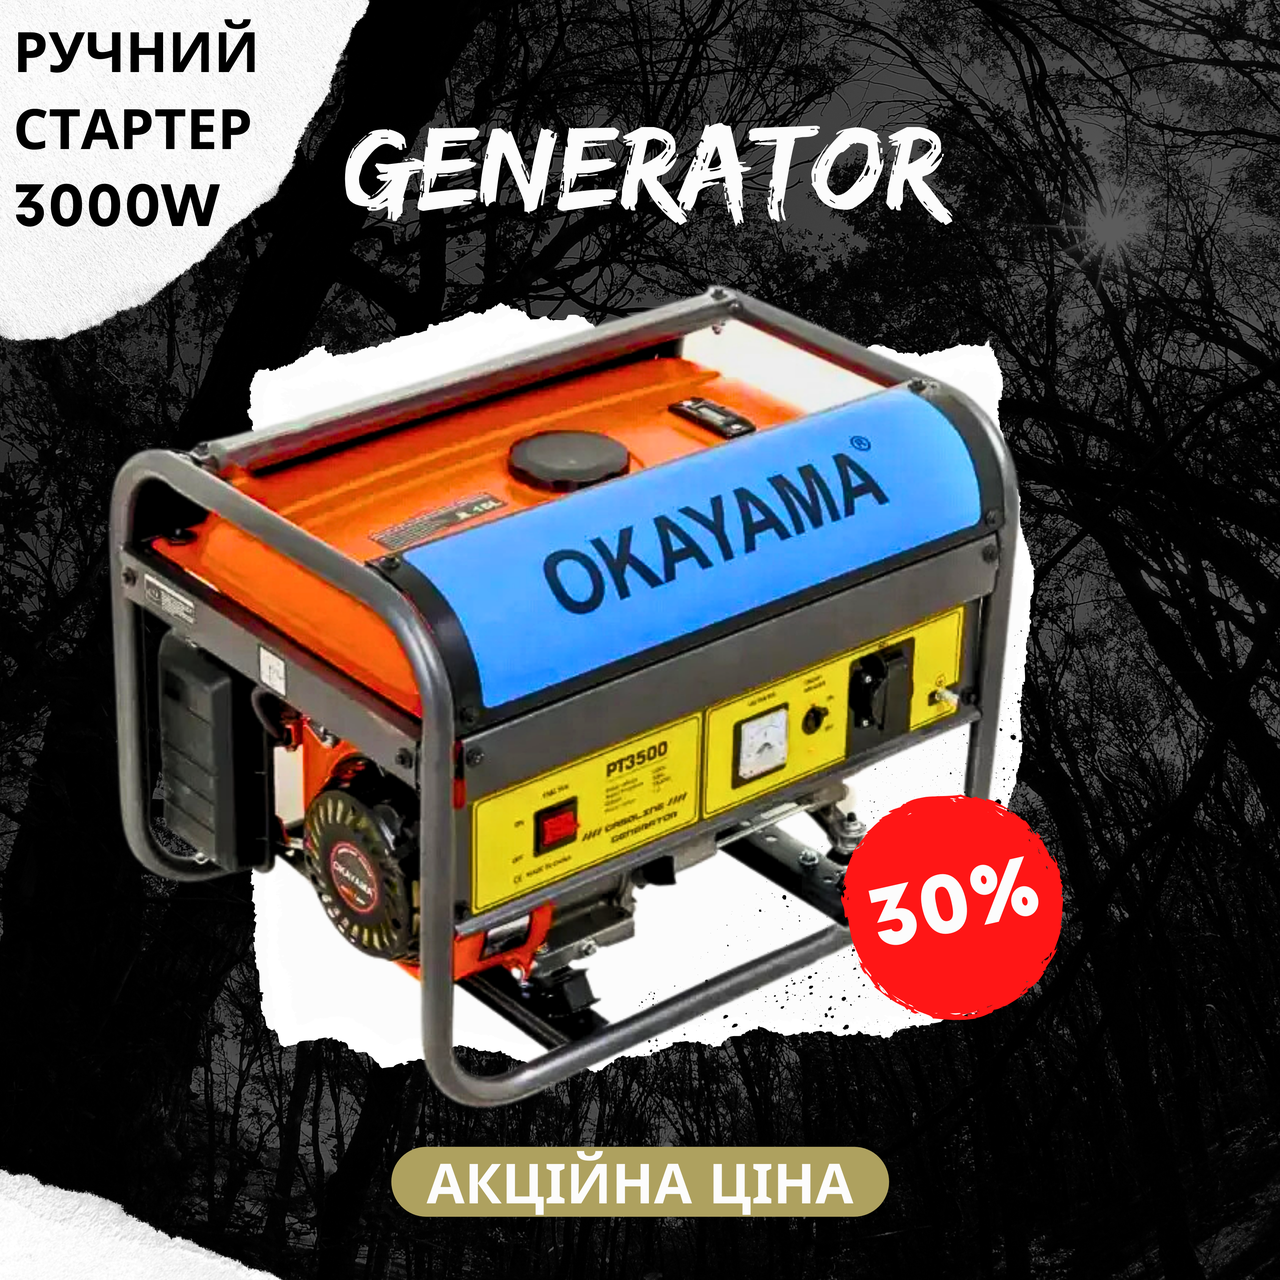 Генератор для будинку OKAYAMA PT-3500 мідна обмотка 3.5 кВт ручний стартер